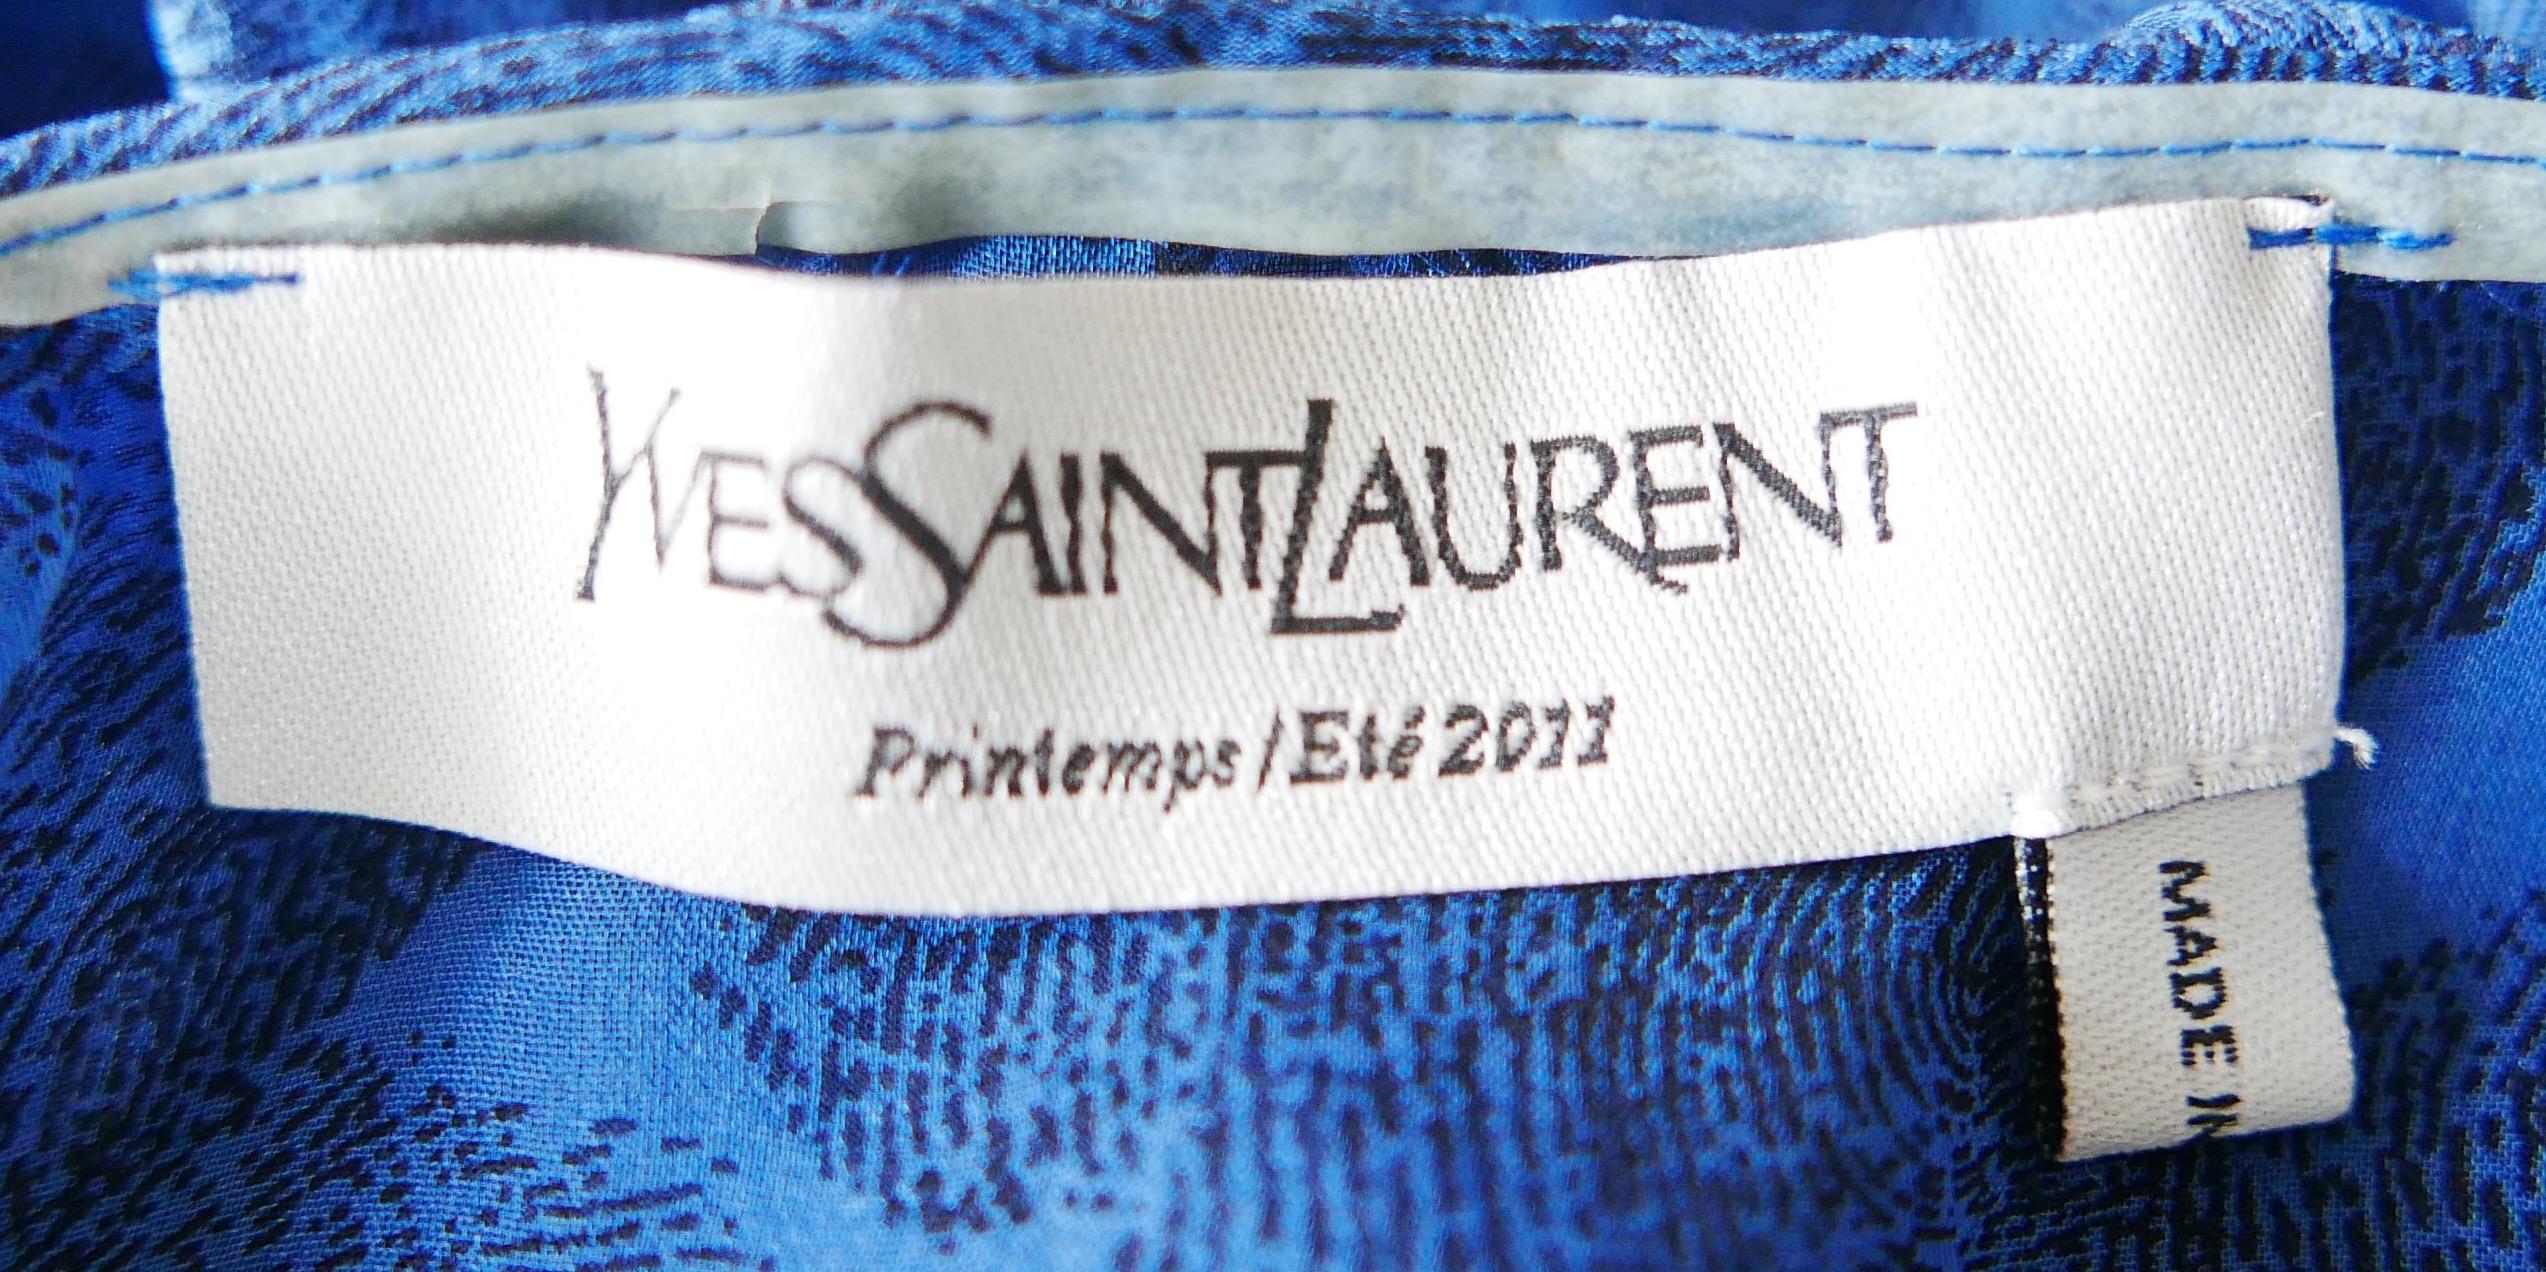 Yves Saint Laurent x Stefano Pilati SS11 Fingerprint Silk Halter Top Blouse For Sale 1